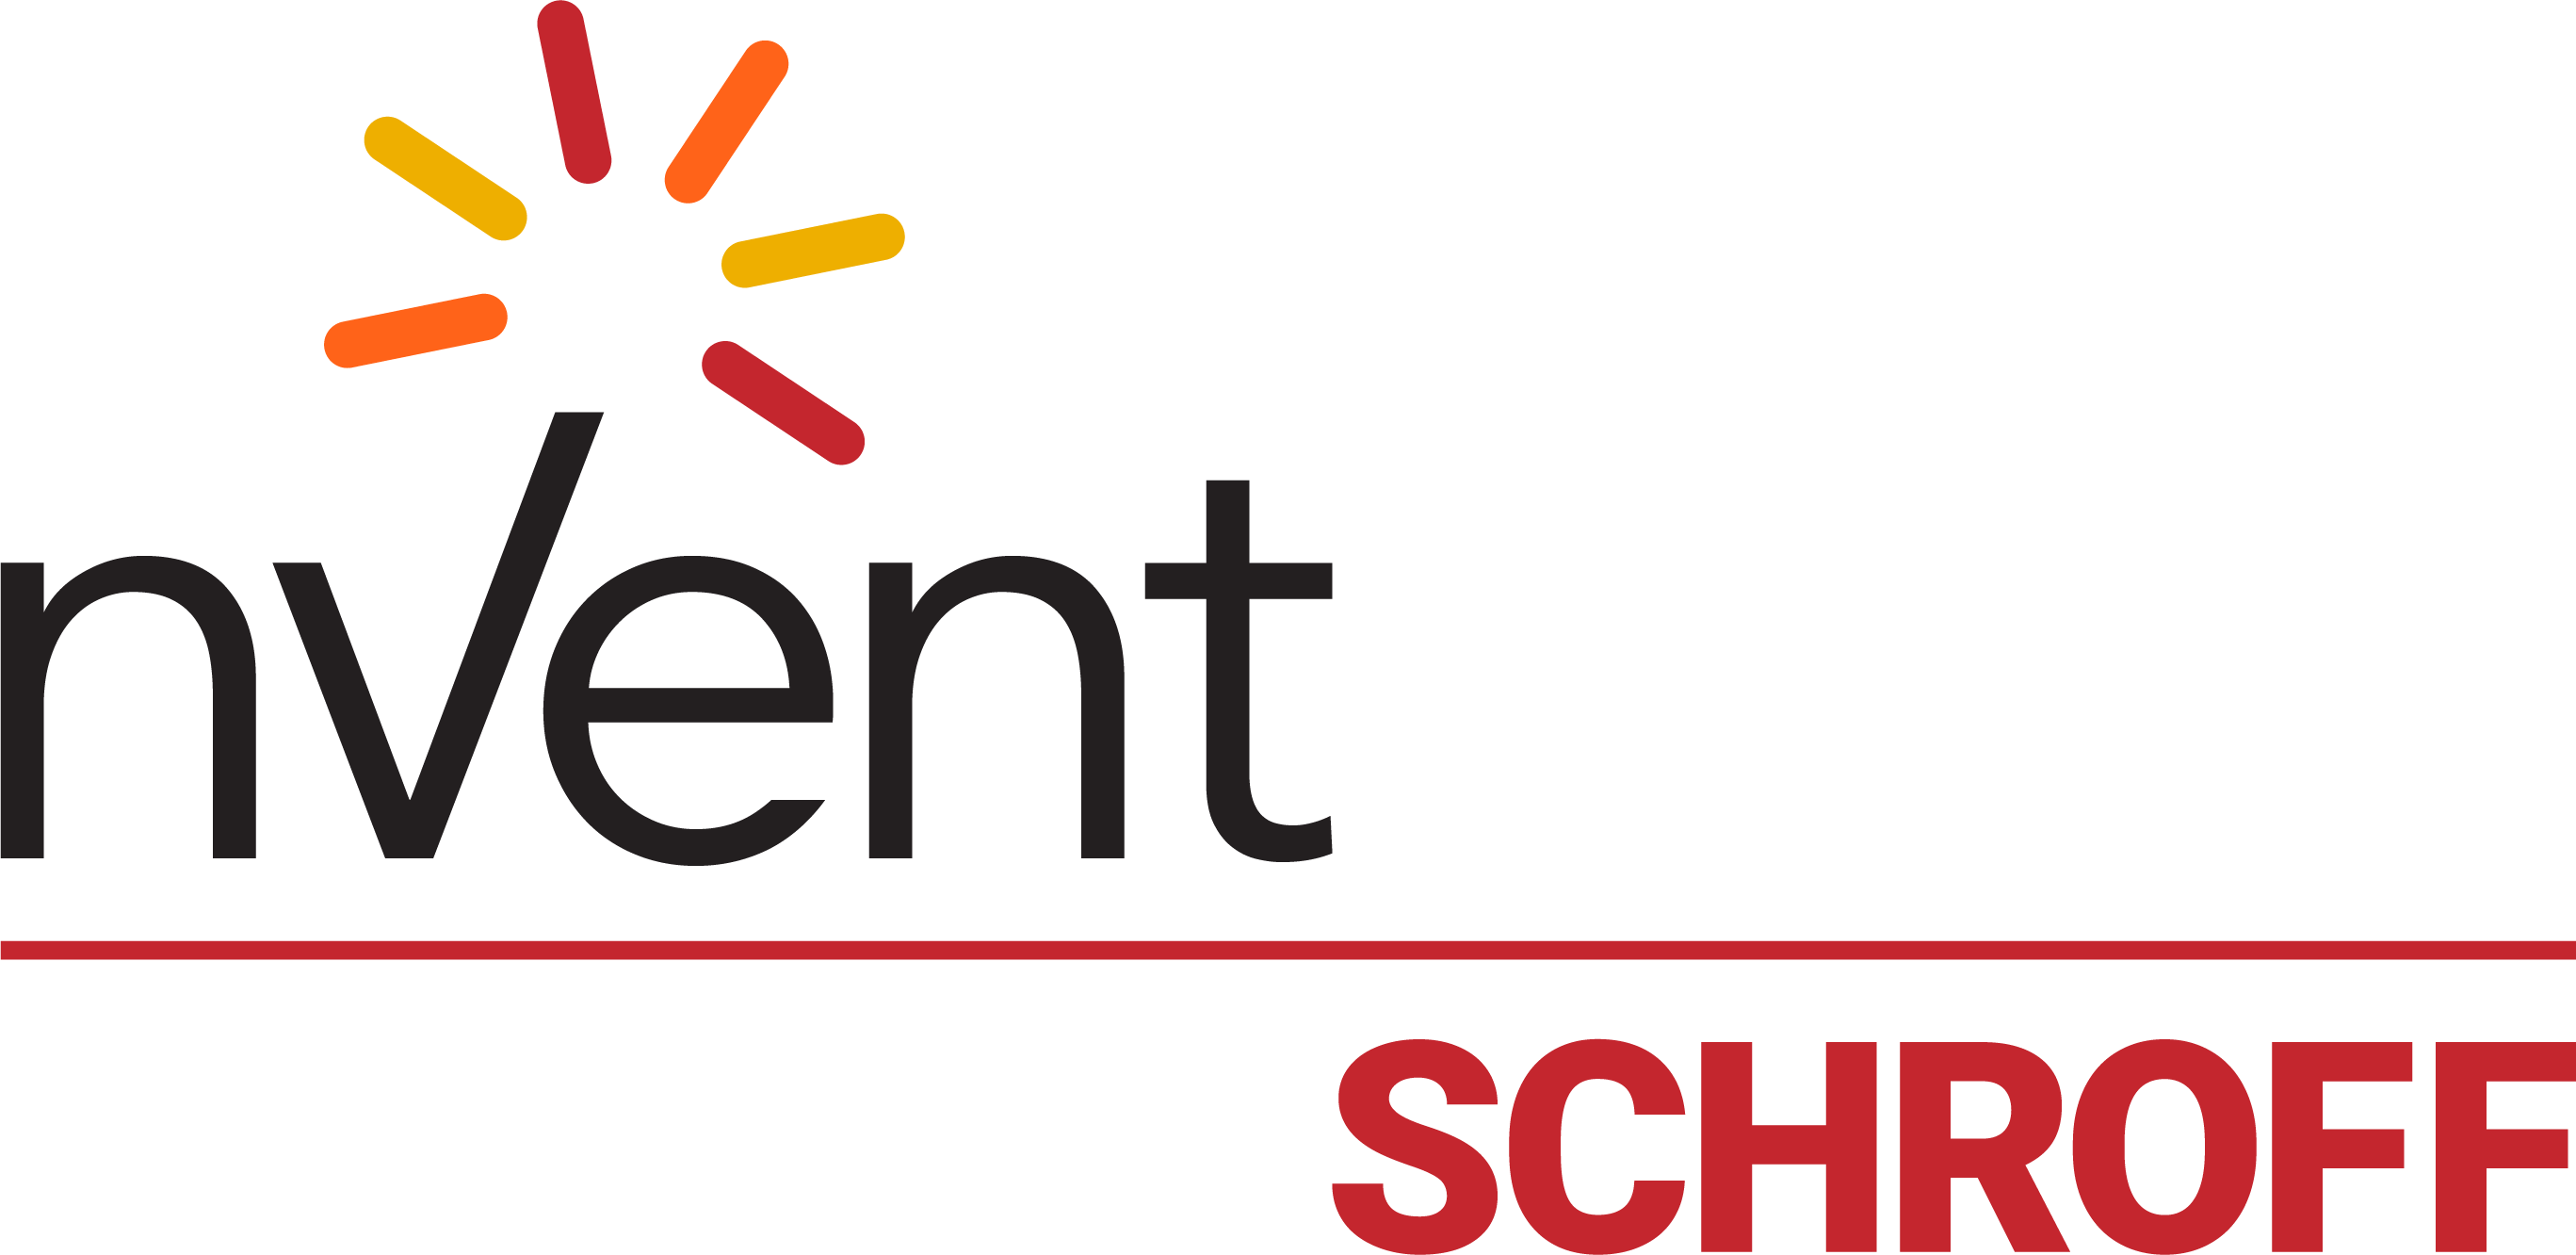 nVent Schroff logo